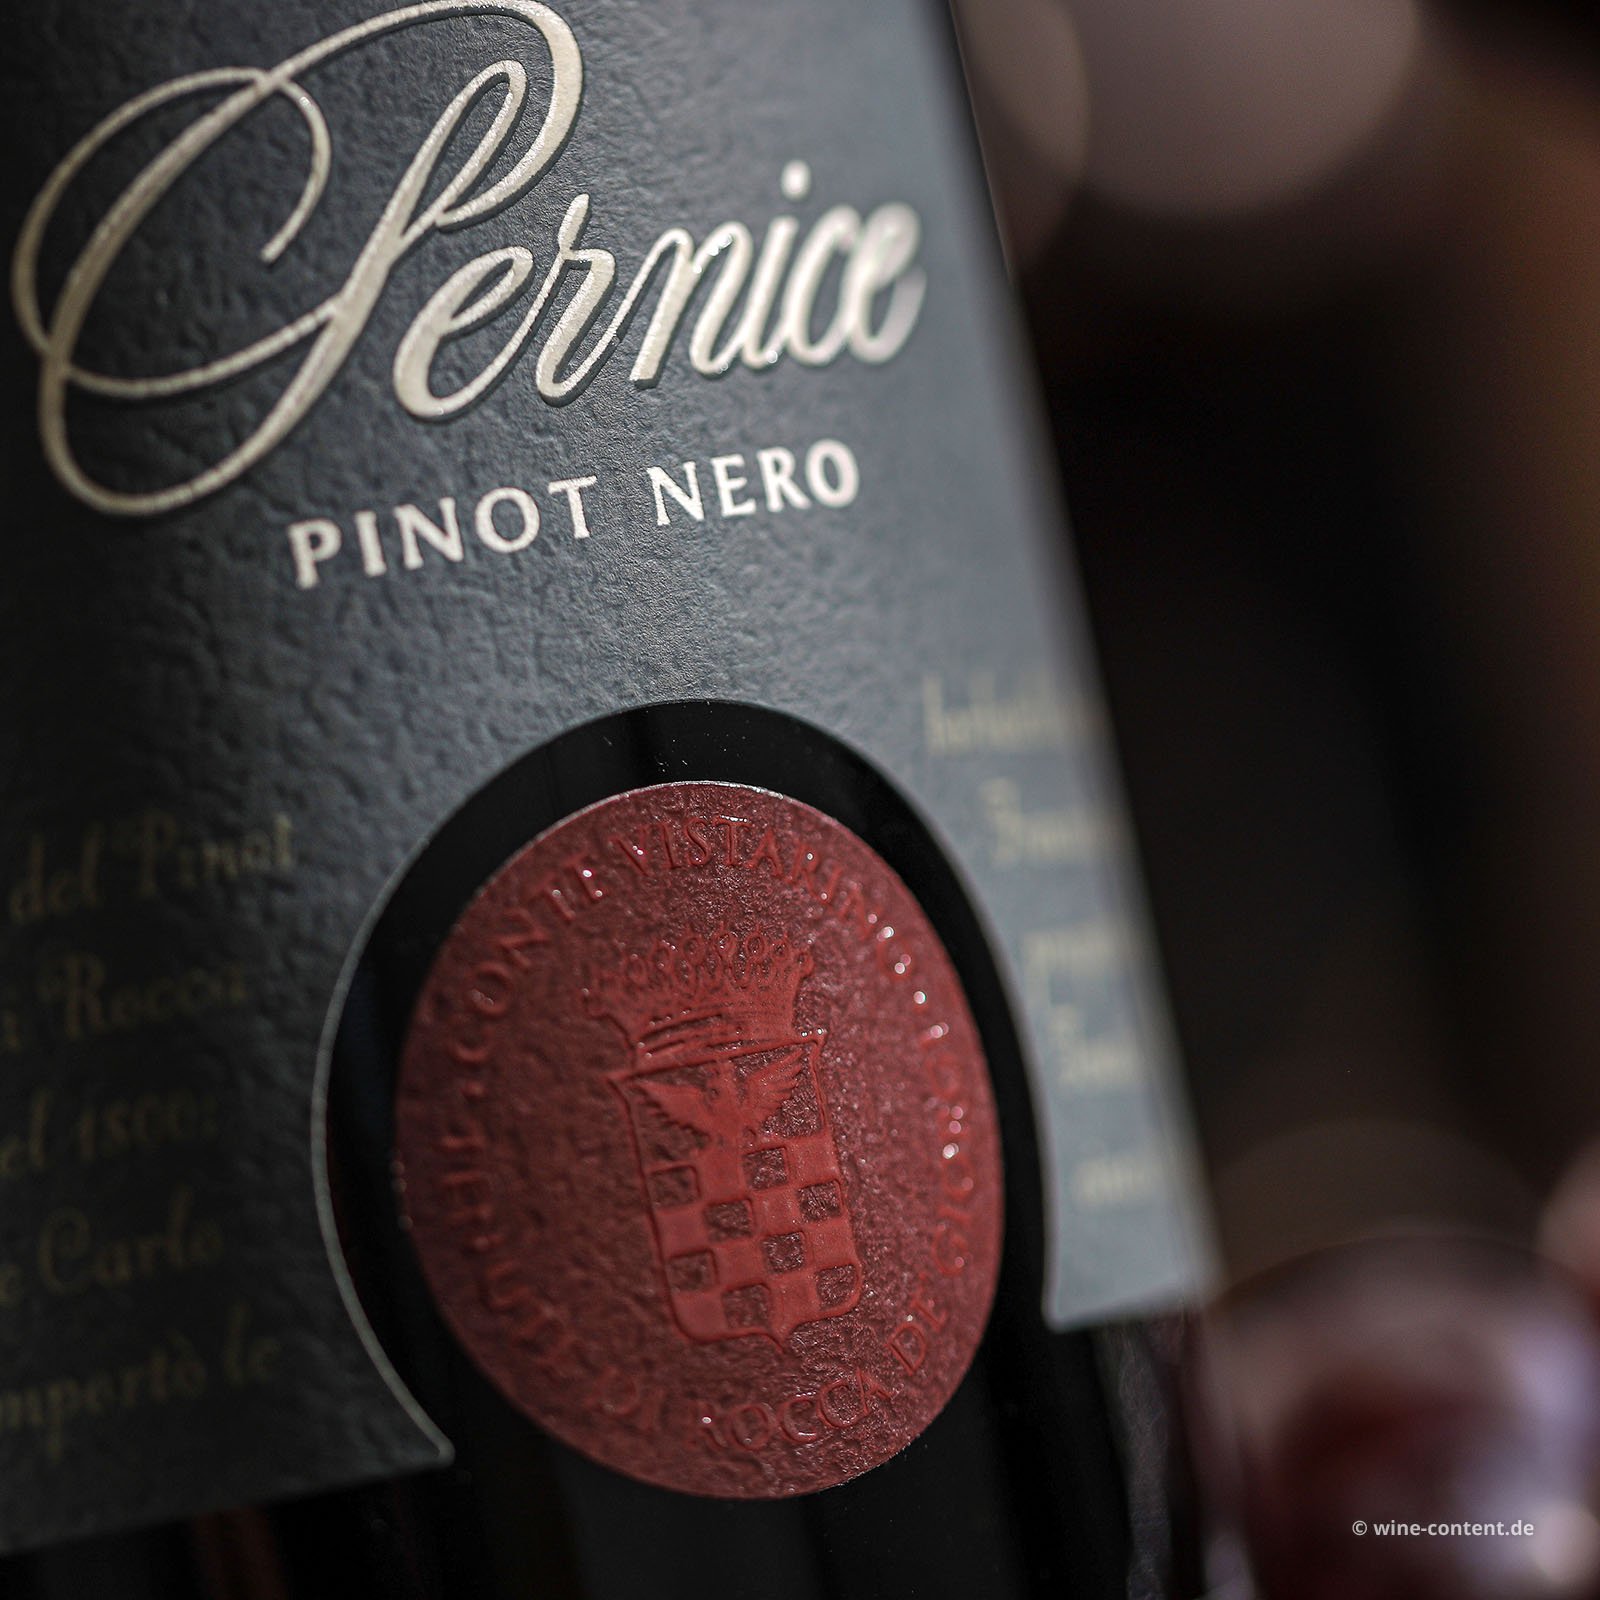 Pinot Nero 2019 Pernice